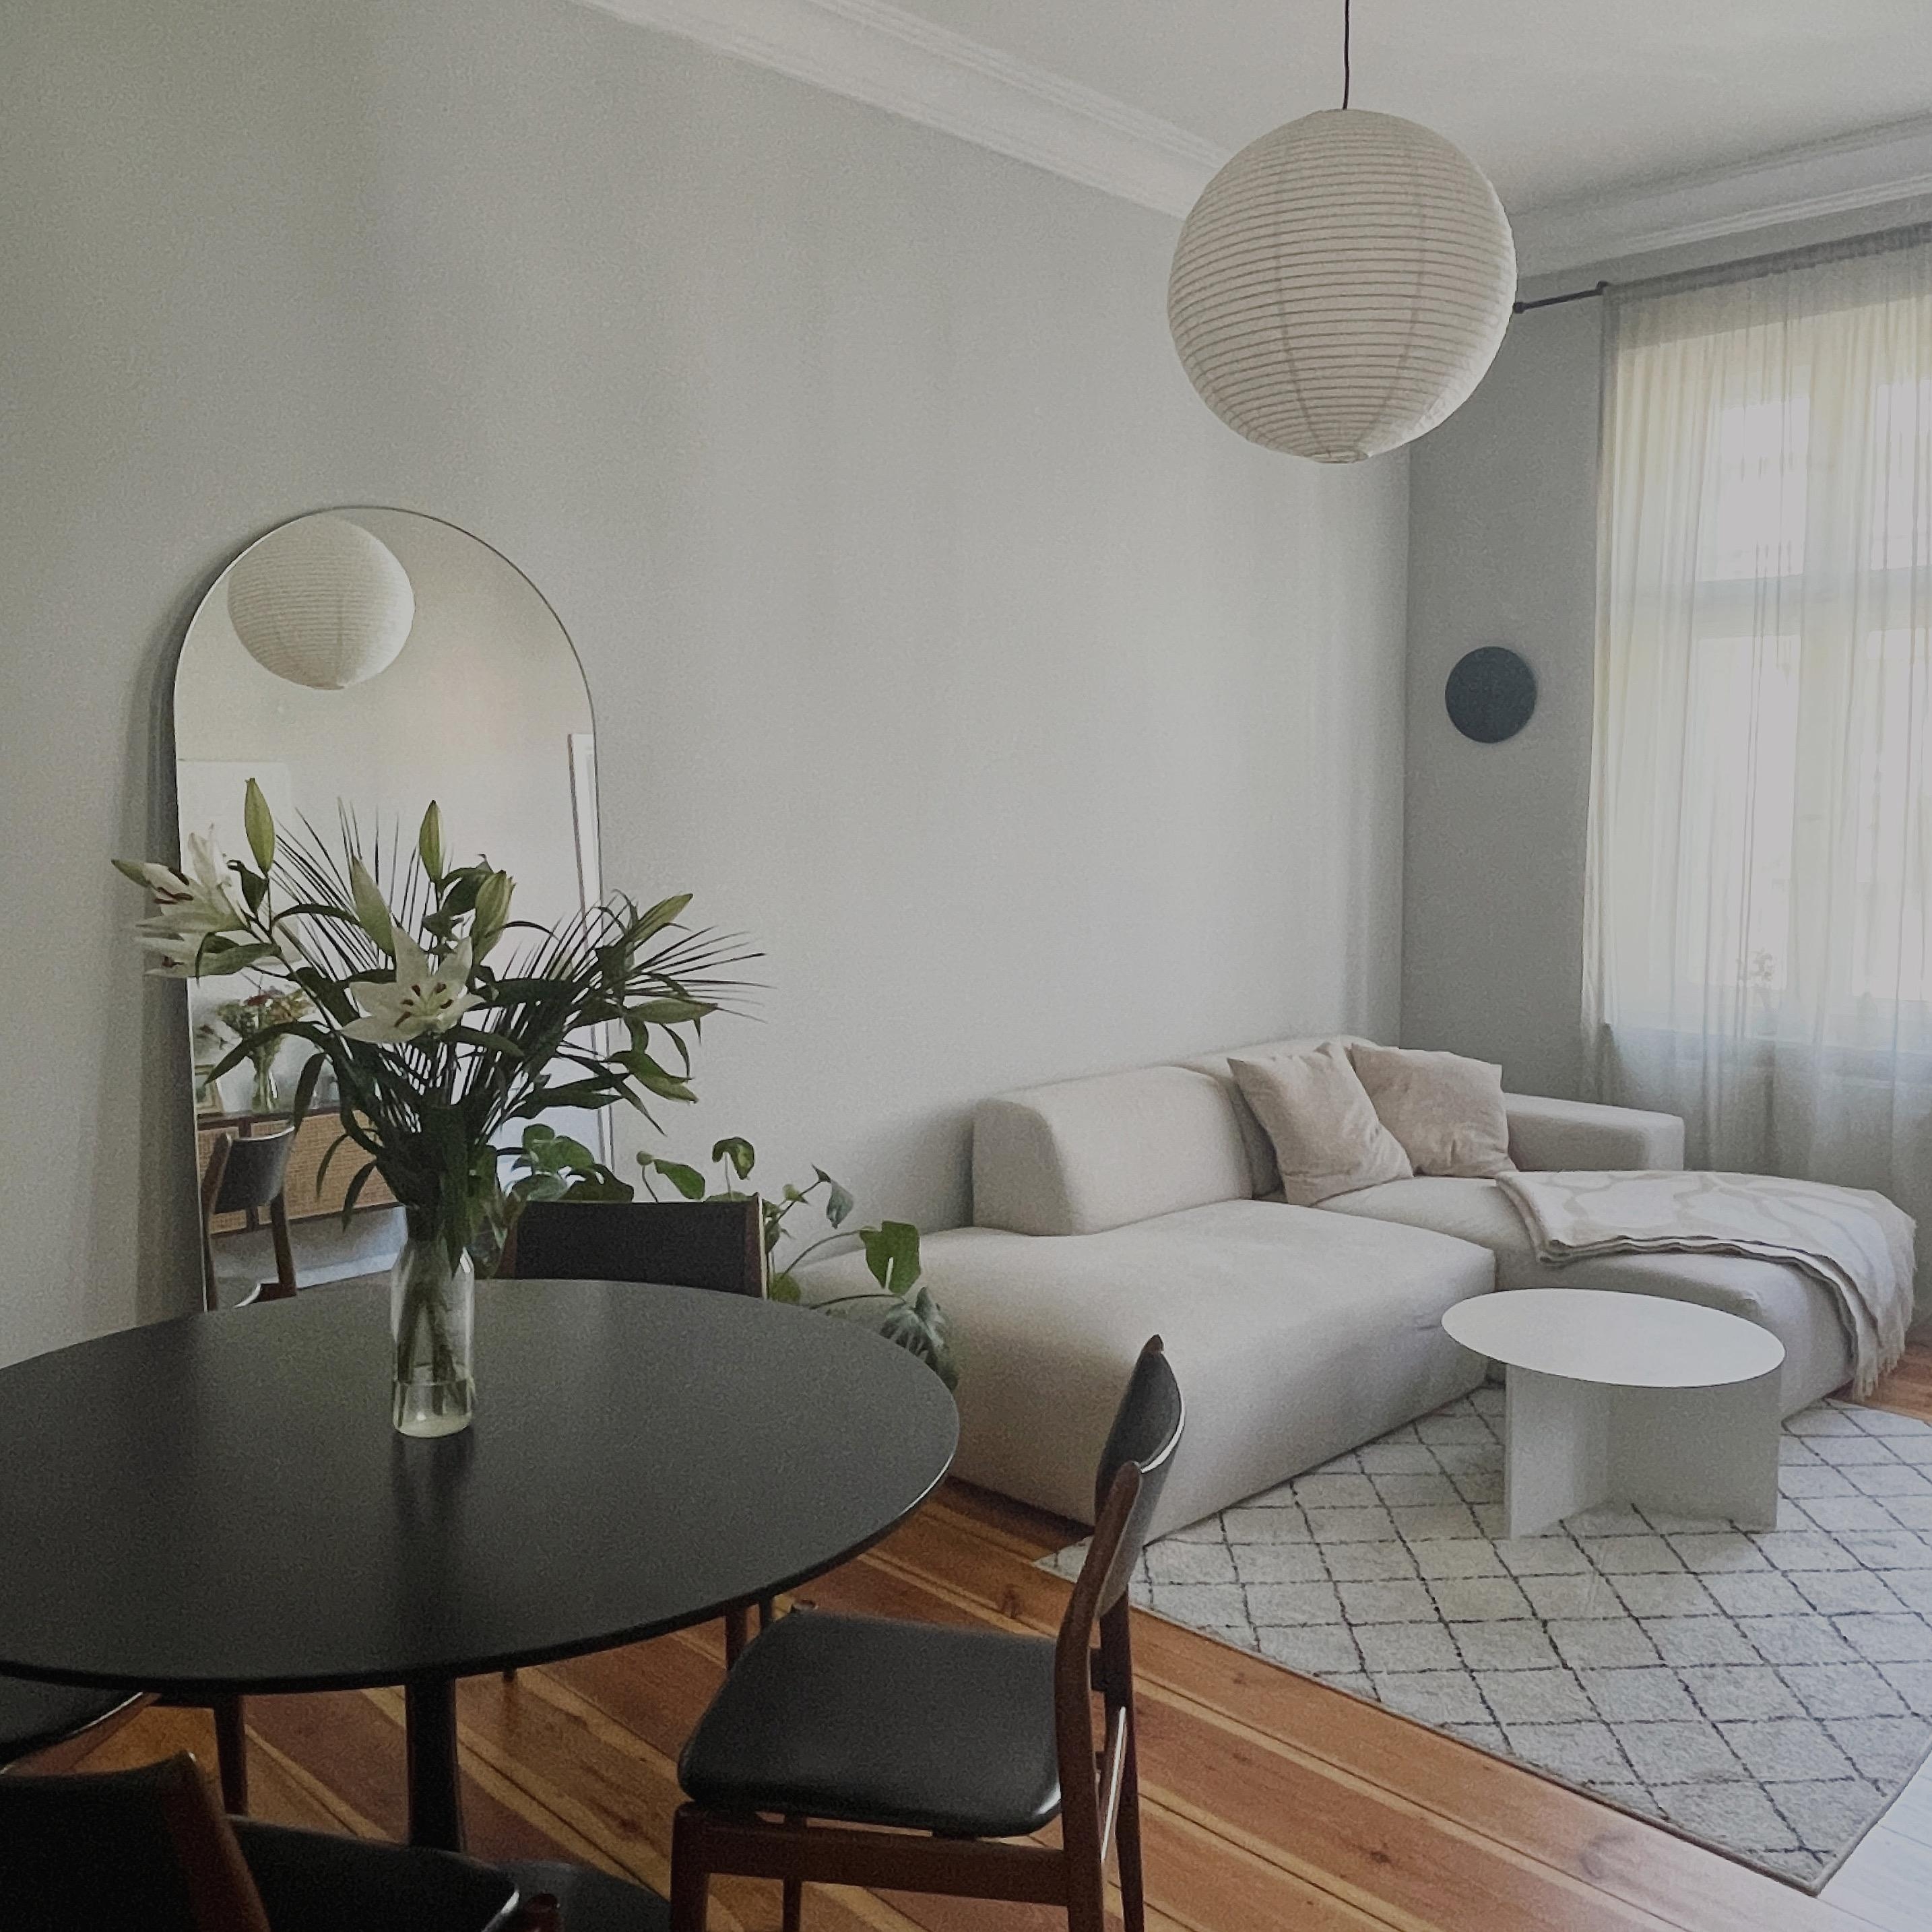 lilli love 
#livingroom #simpleliving #minimal 